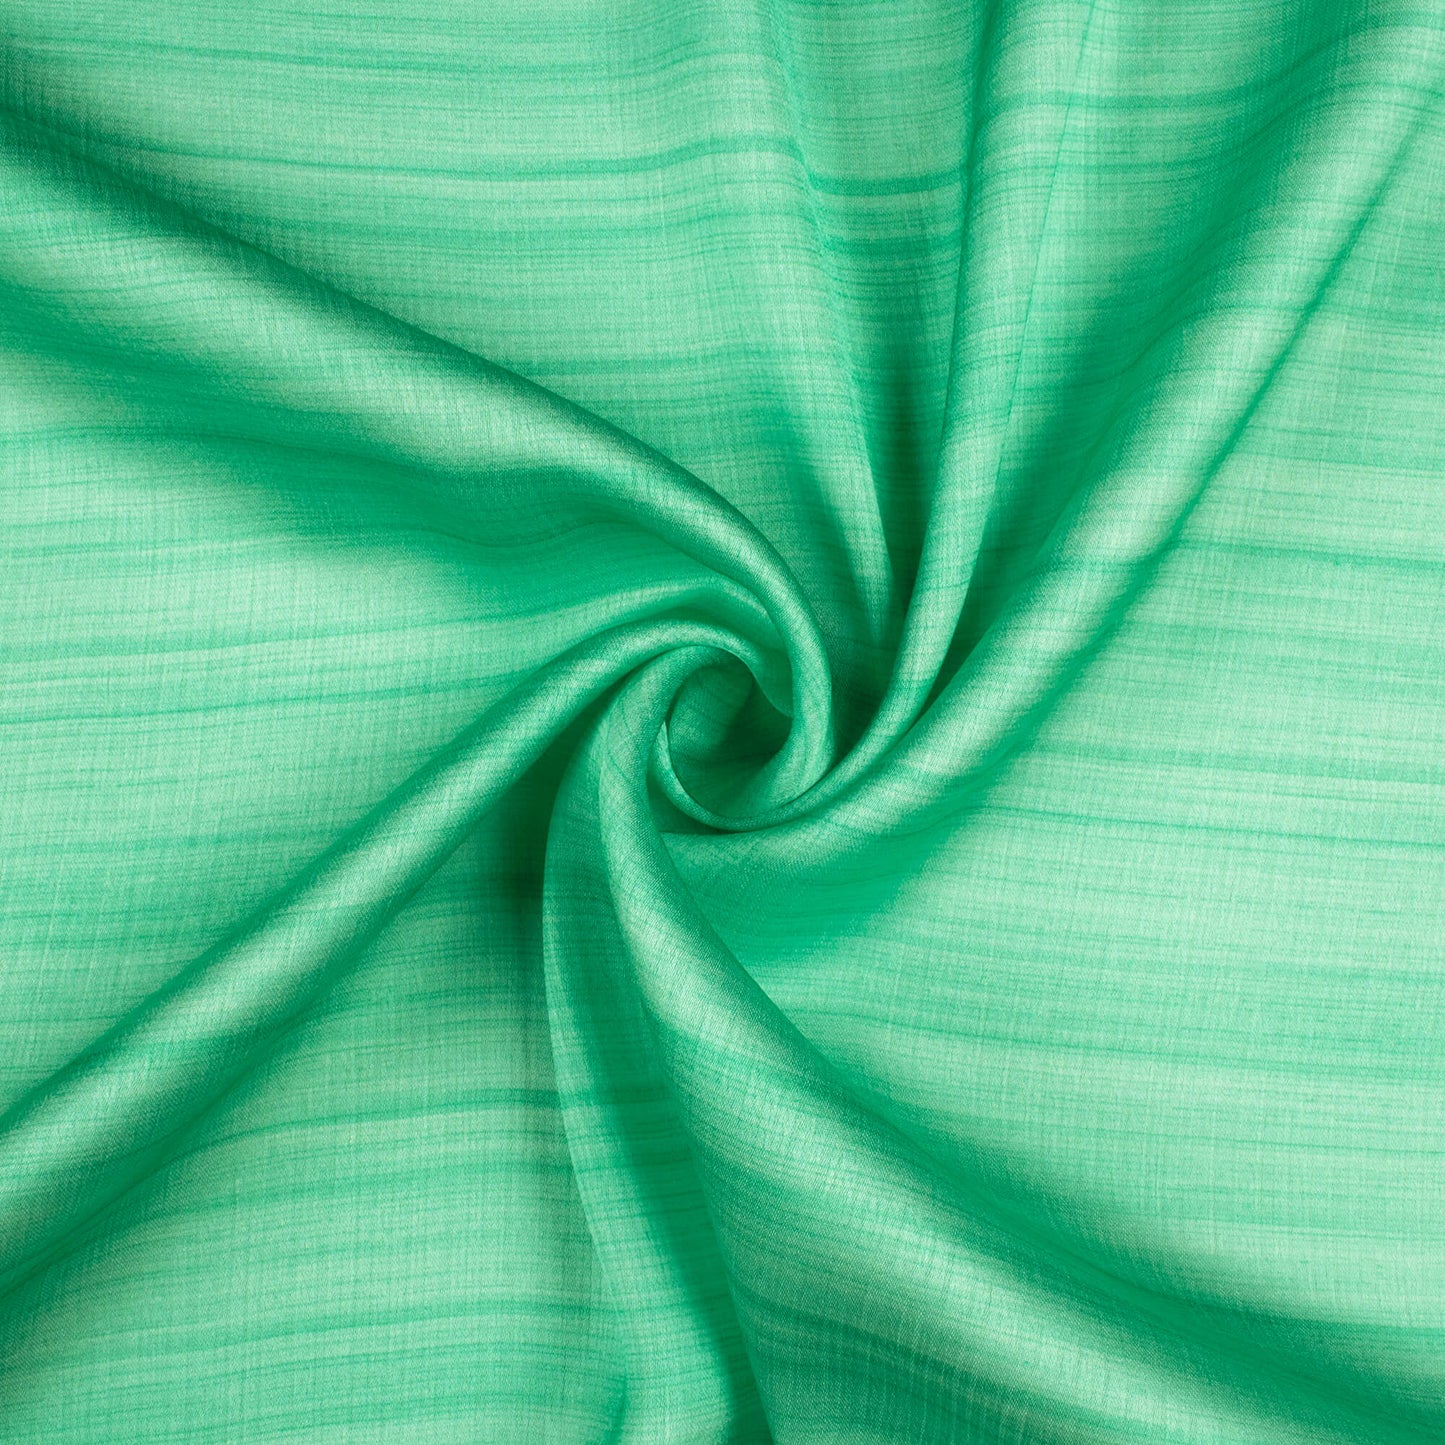 Seaform Green Texture Pattern Digital Print Chiffon Satin Fabric